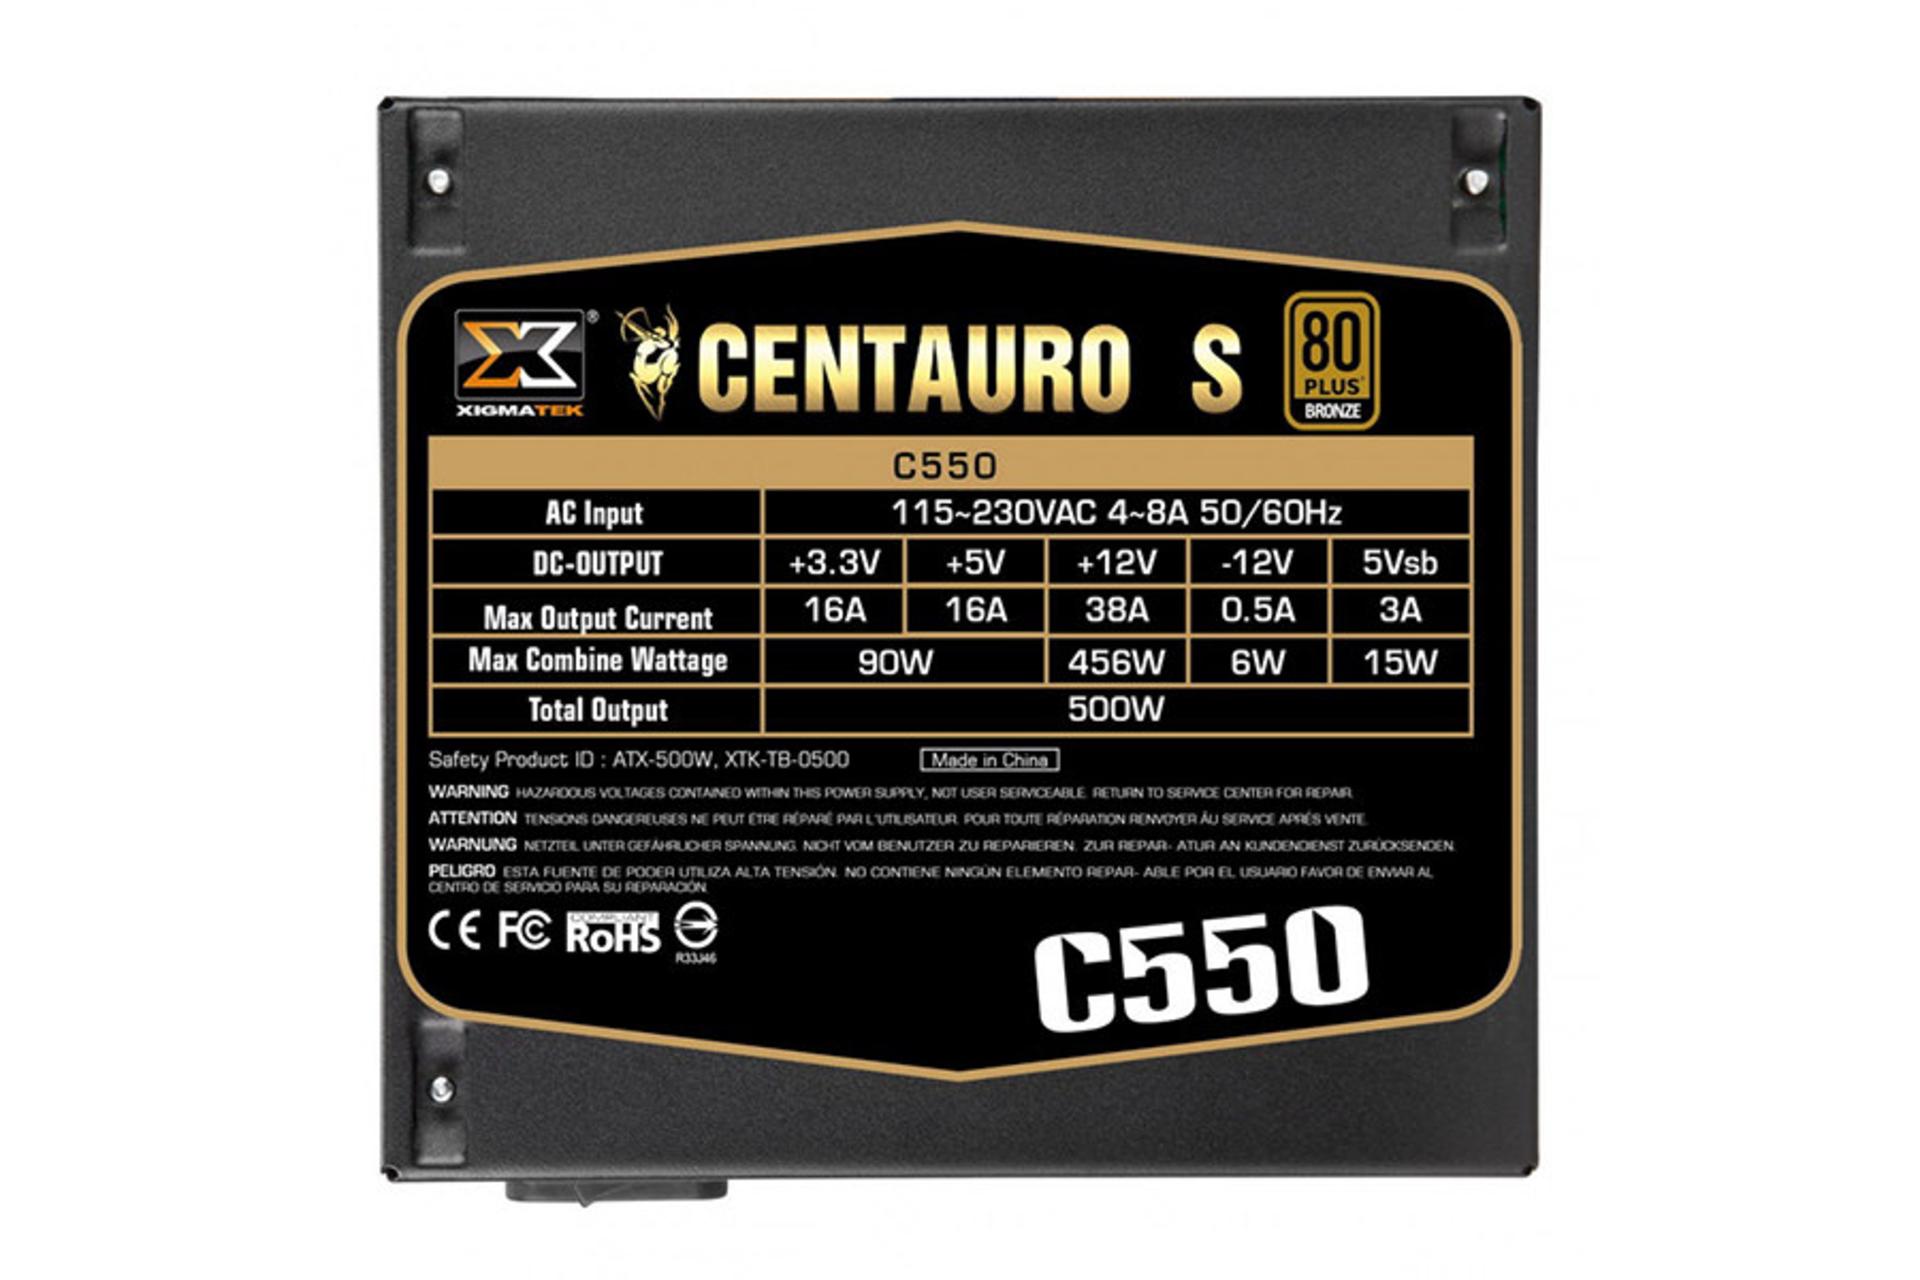 پاور کامپیوتر زیگماتک Centauro S C550 با توان 500 وات برچسب مشخصات